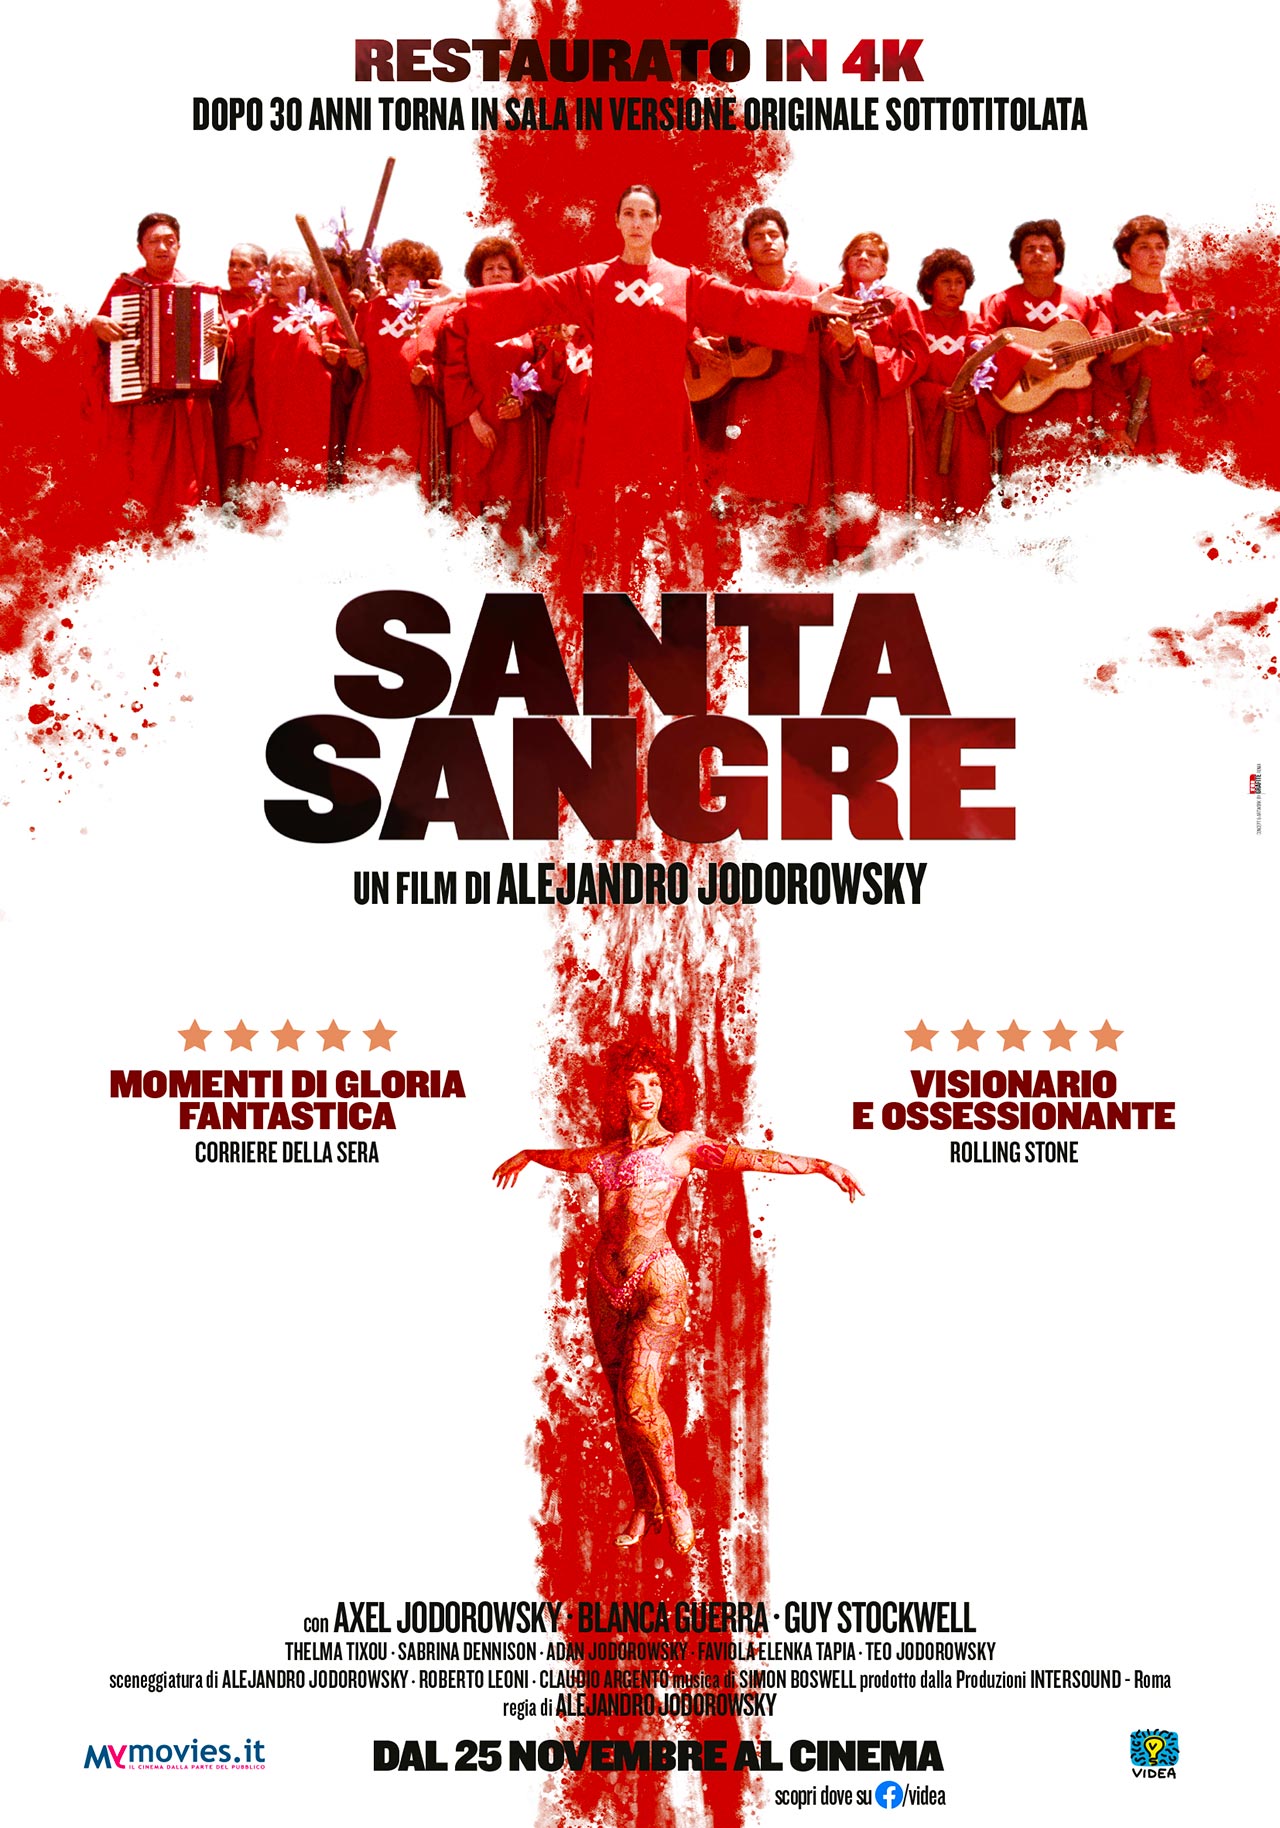  Dall'articolo: Santa sangre - Sangue santo, il poster italiano del film restaurato in 4K.